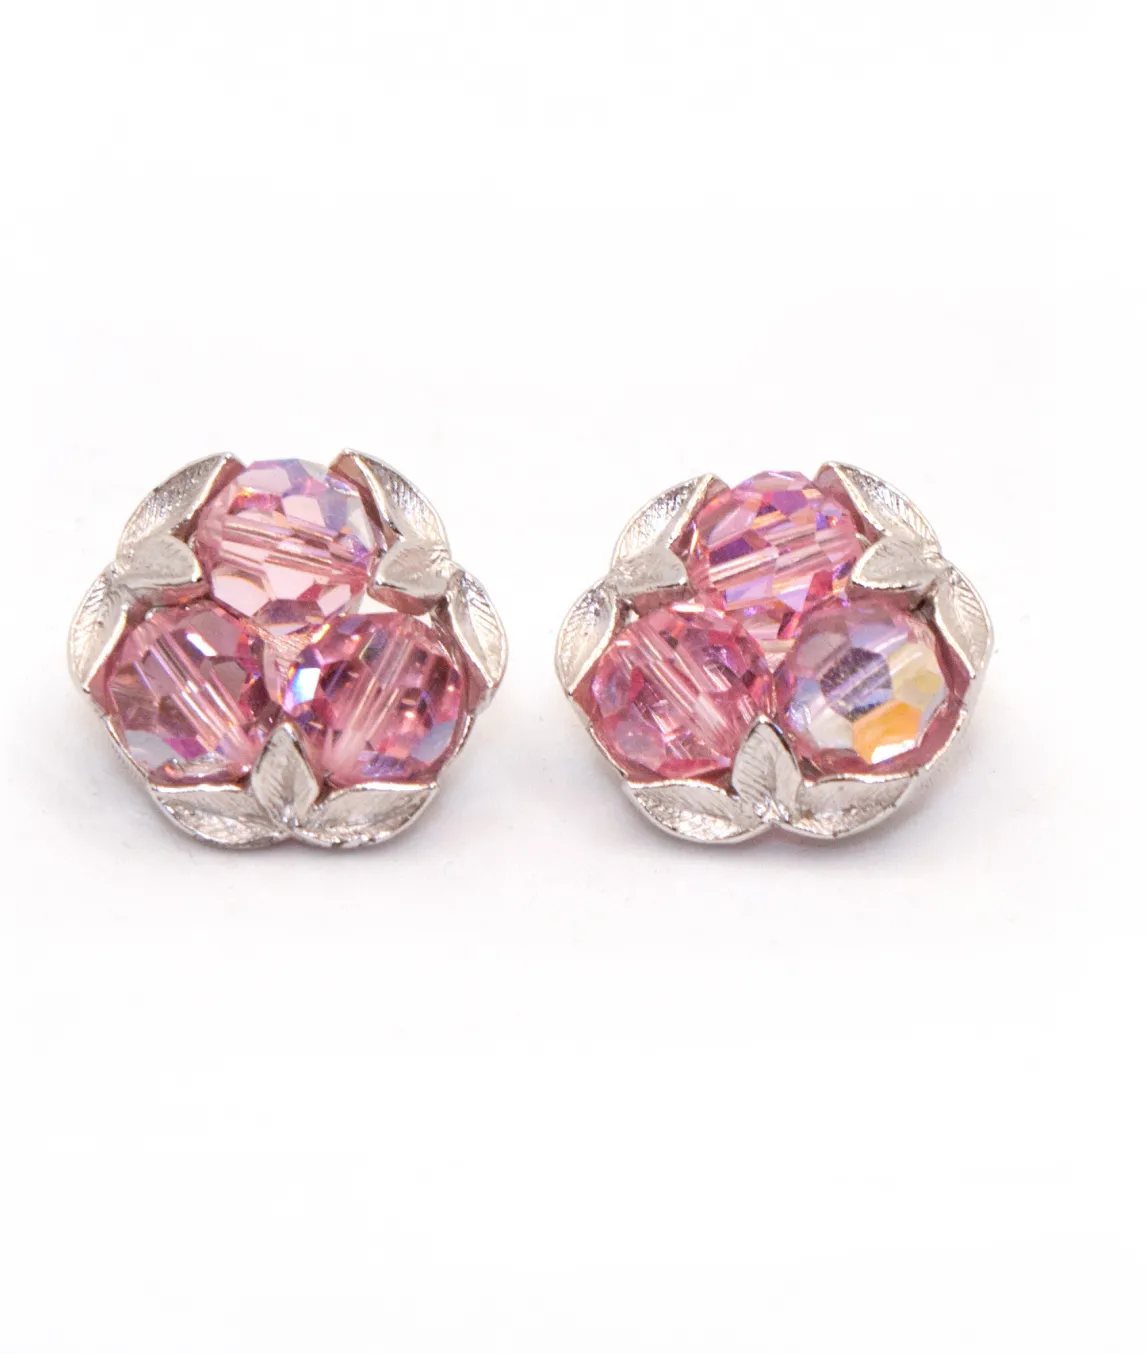 Pink crystal bead vintage earrings by G Sherman in silver metal